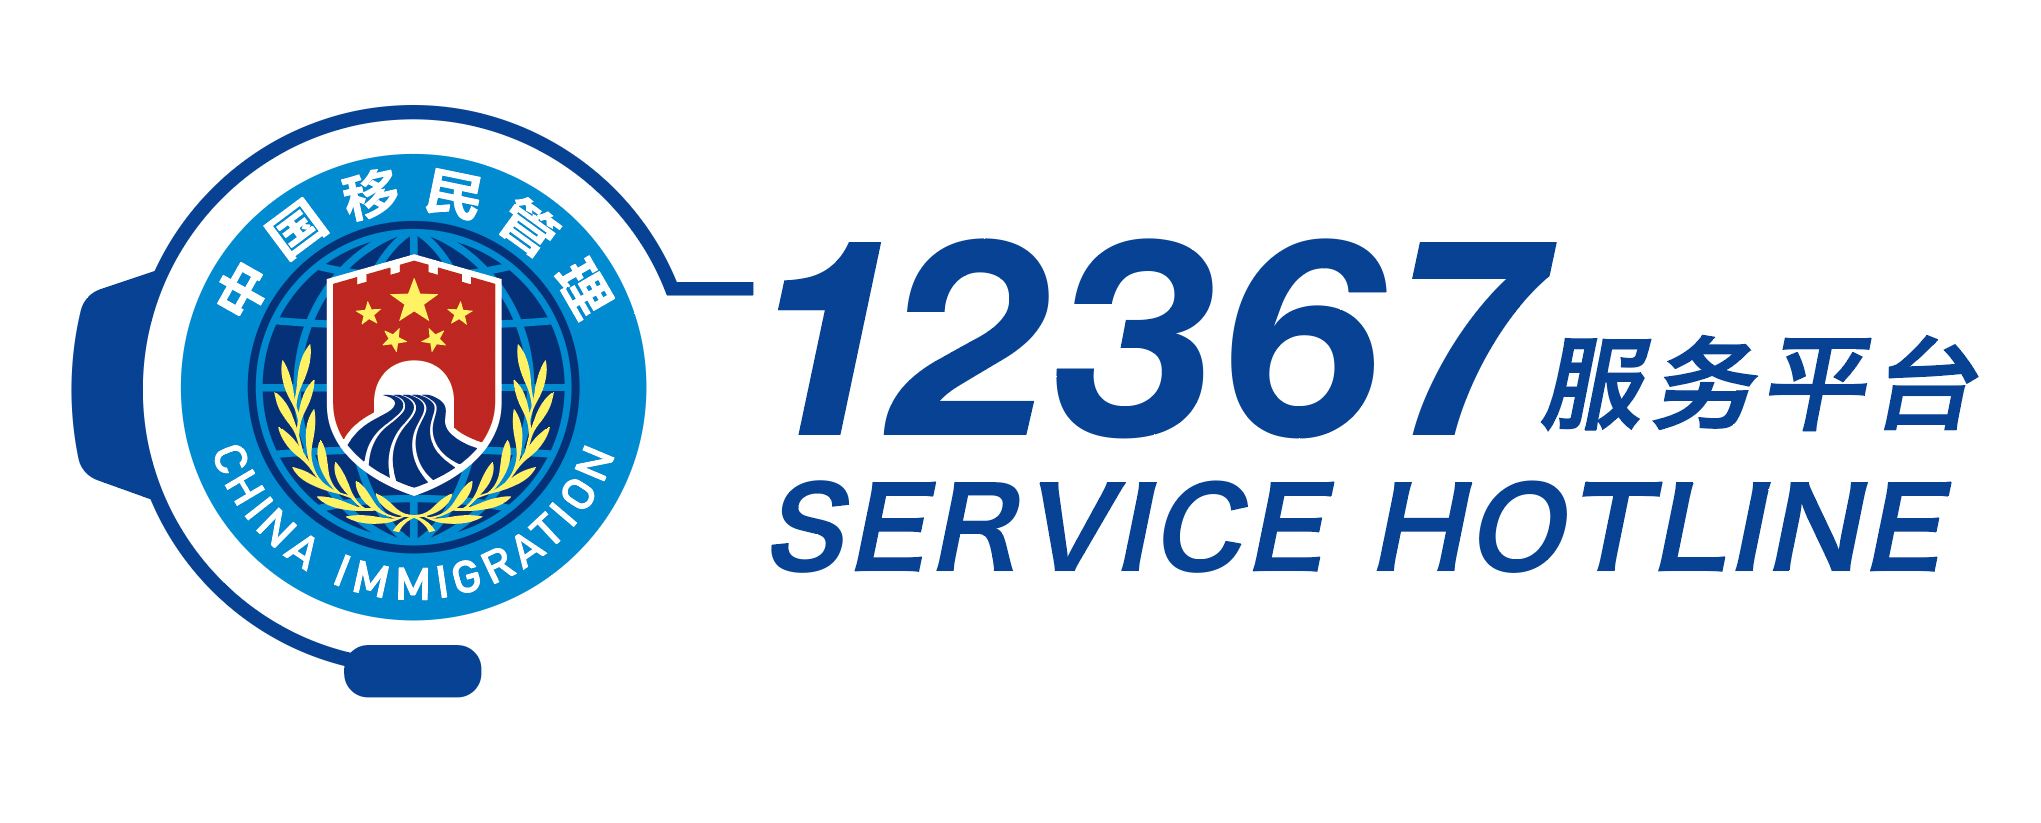 12367服务平台标识由中国移民管理标志、耳麦造型以及“12367服务平台”中英文字样等元素构成。